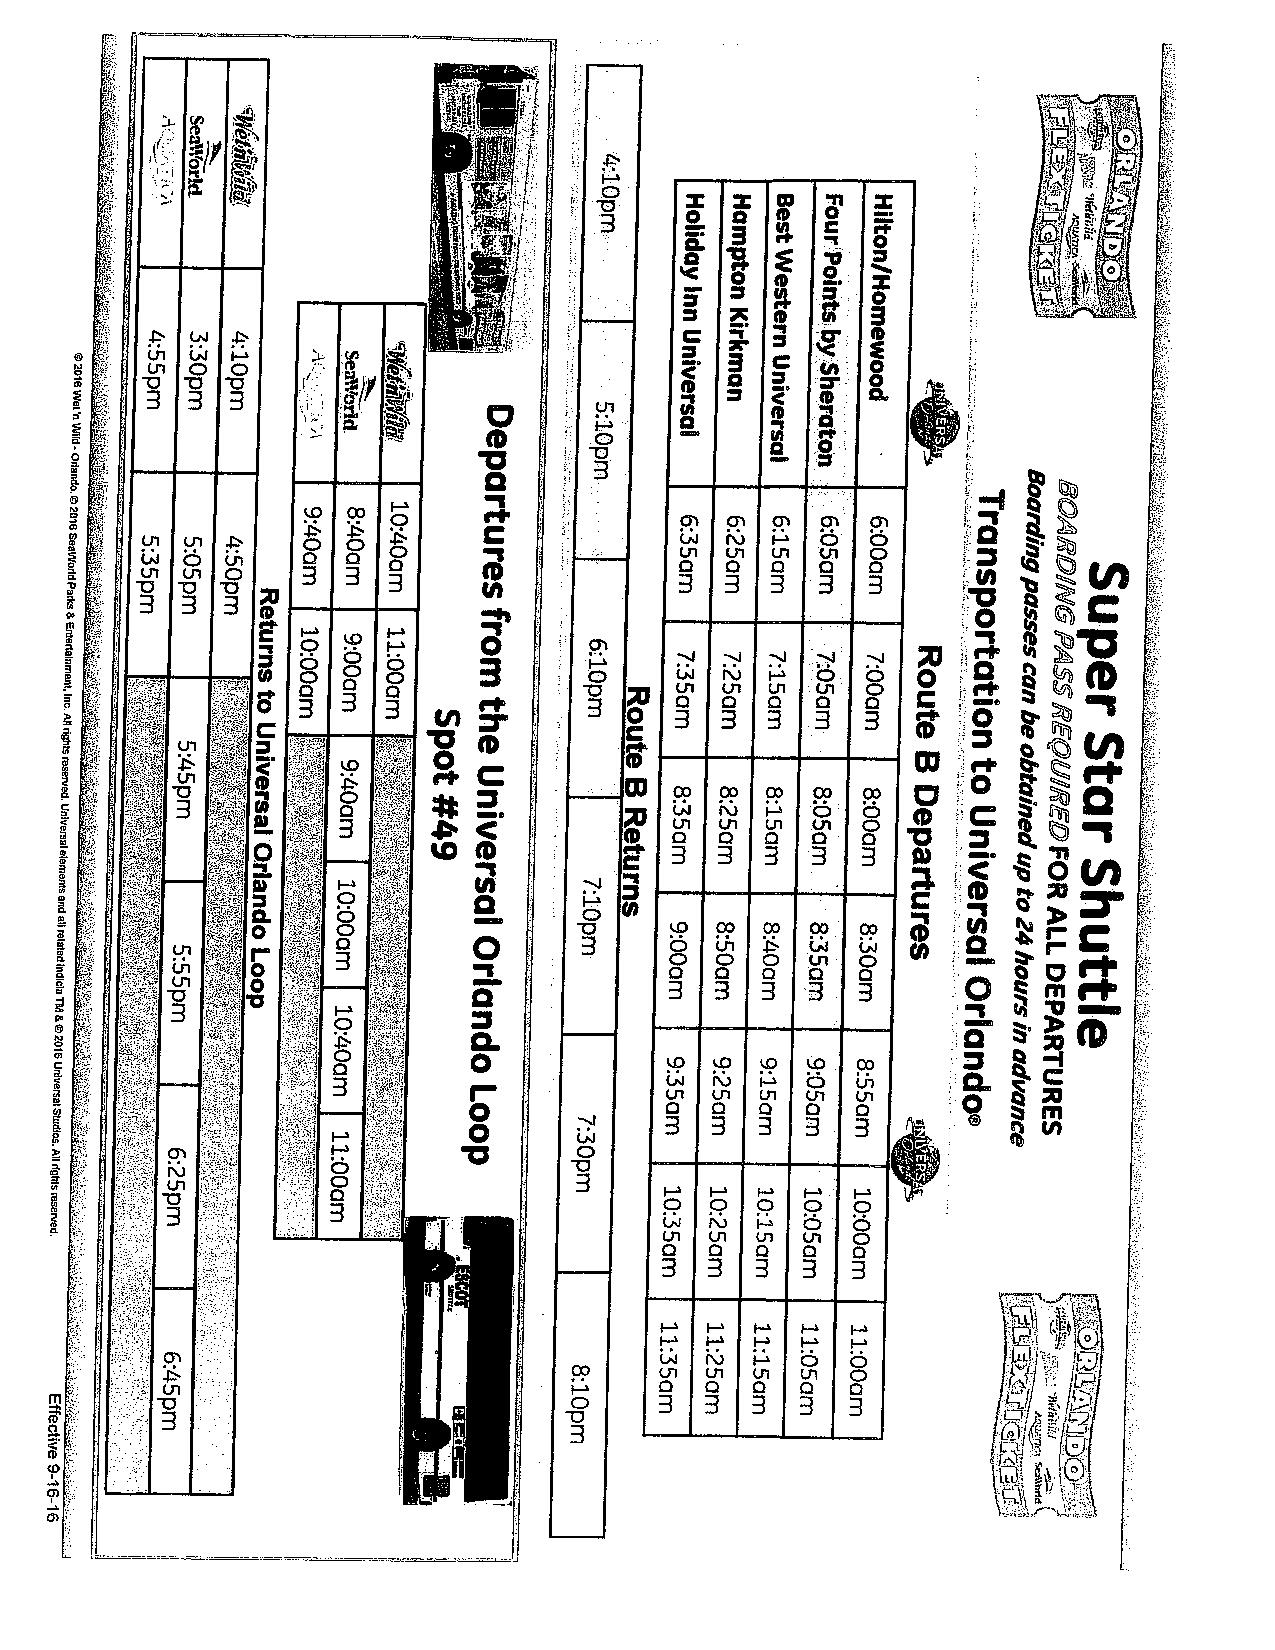 Shuttle Schedule 2-page-001.jpg